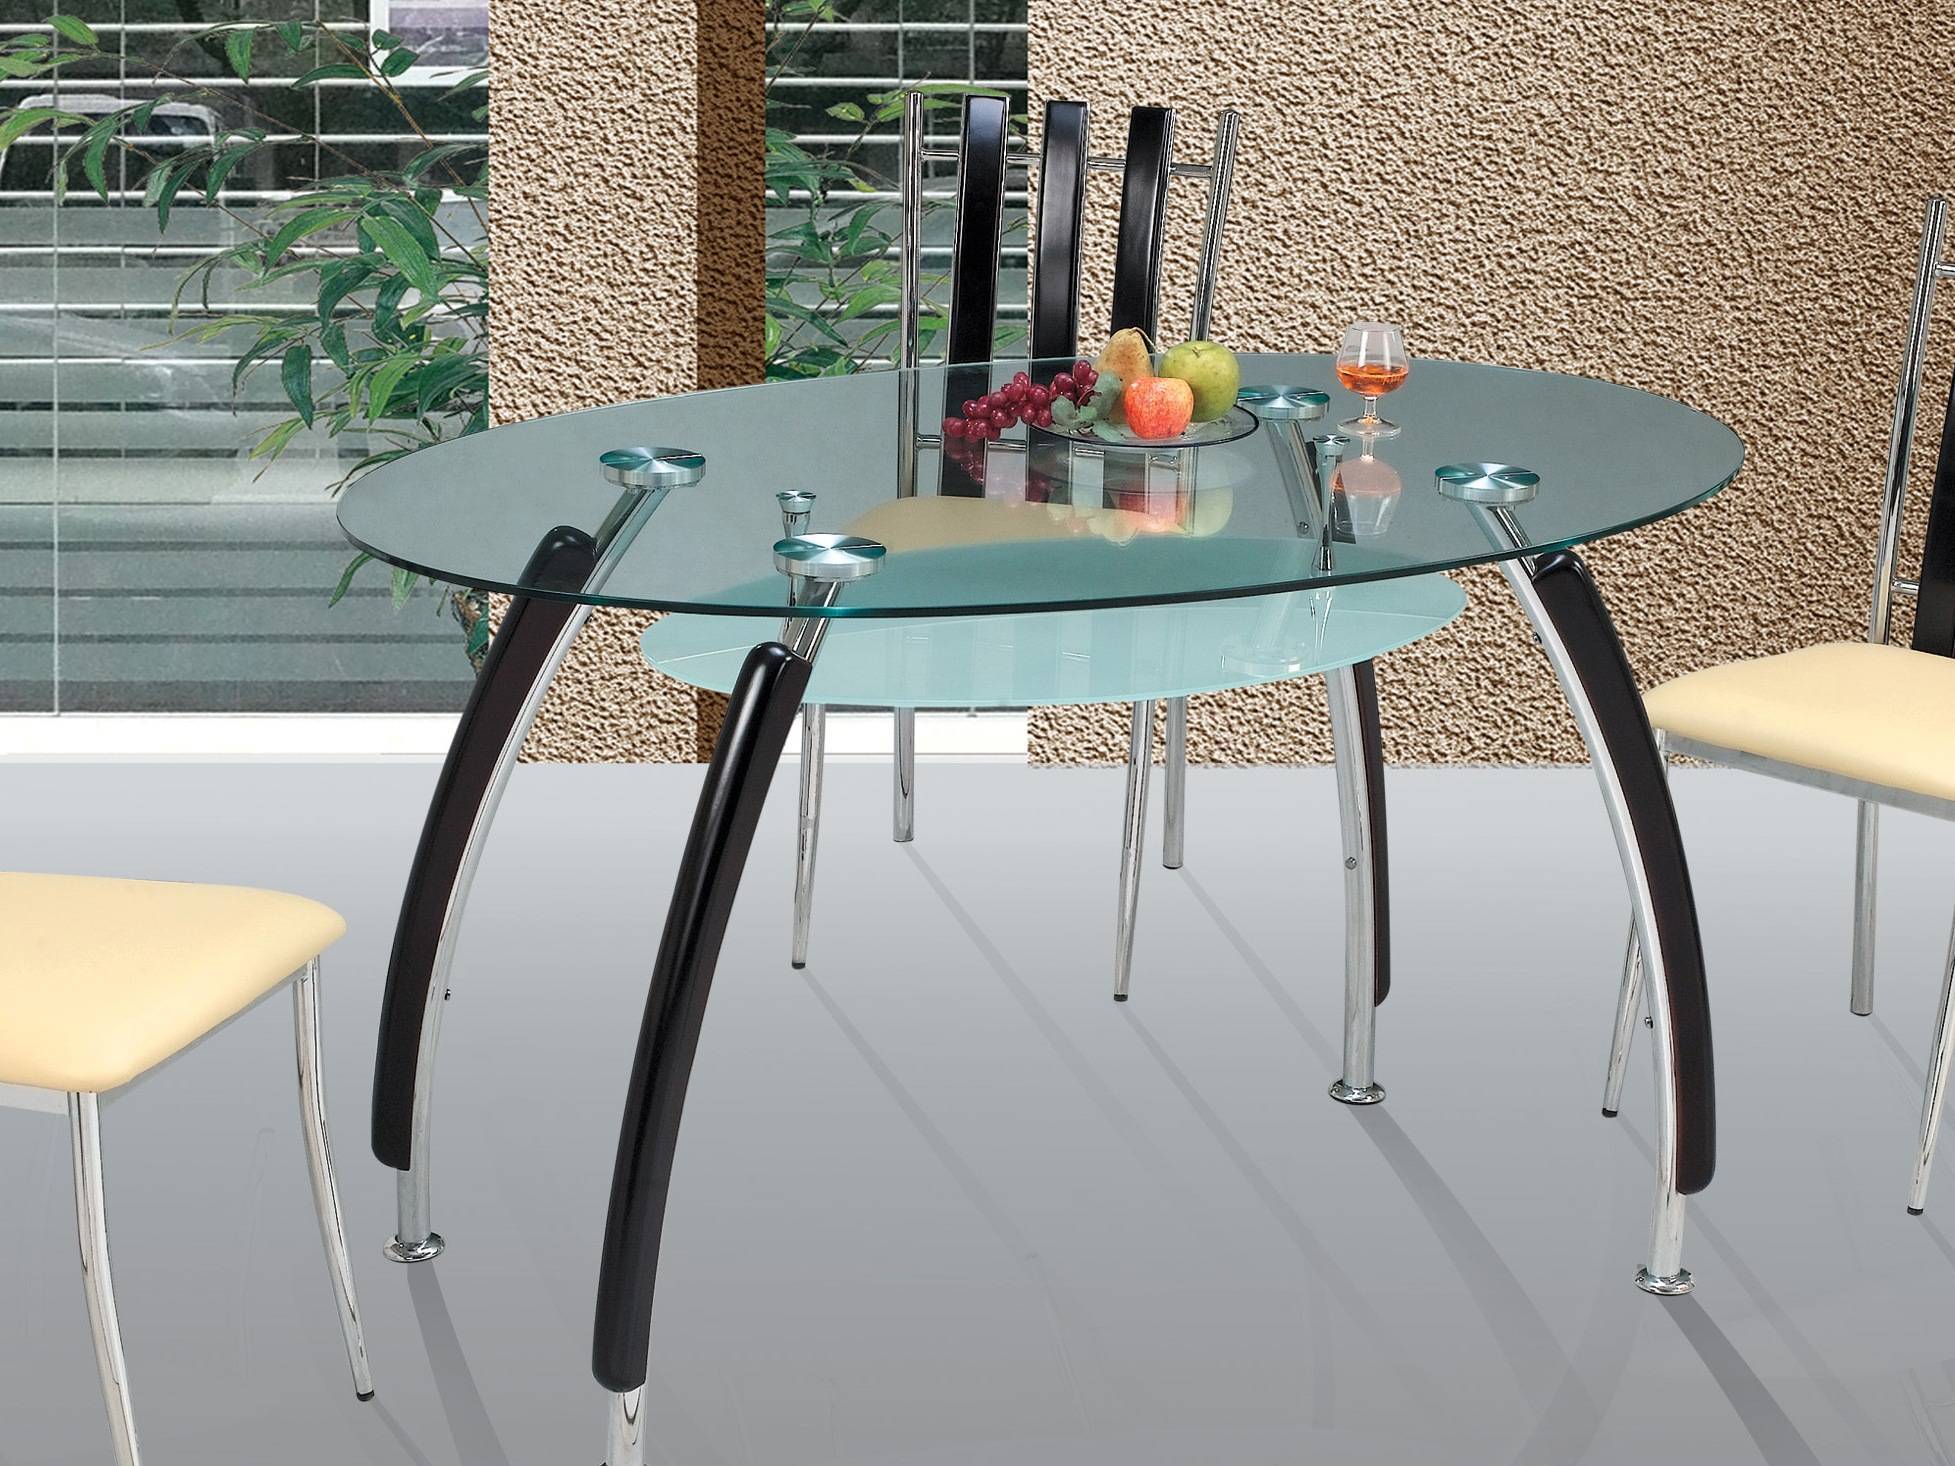 Стеклянные столы для кухни: достоинства, размеры, формы, модели, правила эксплуатации, как выбрать